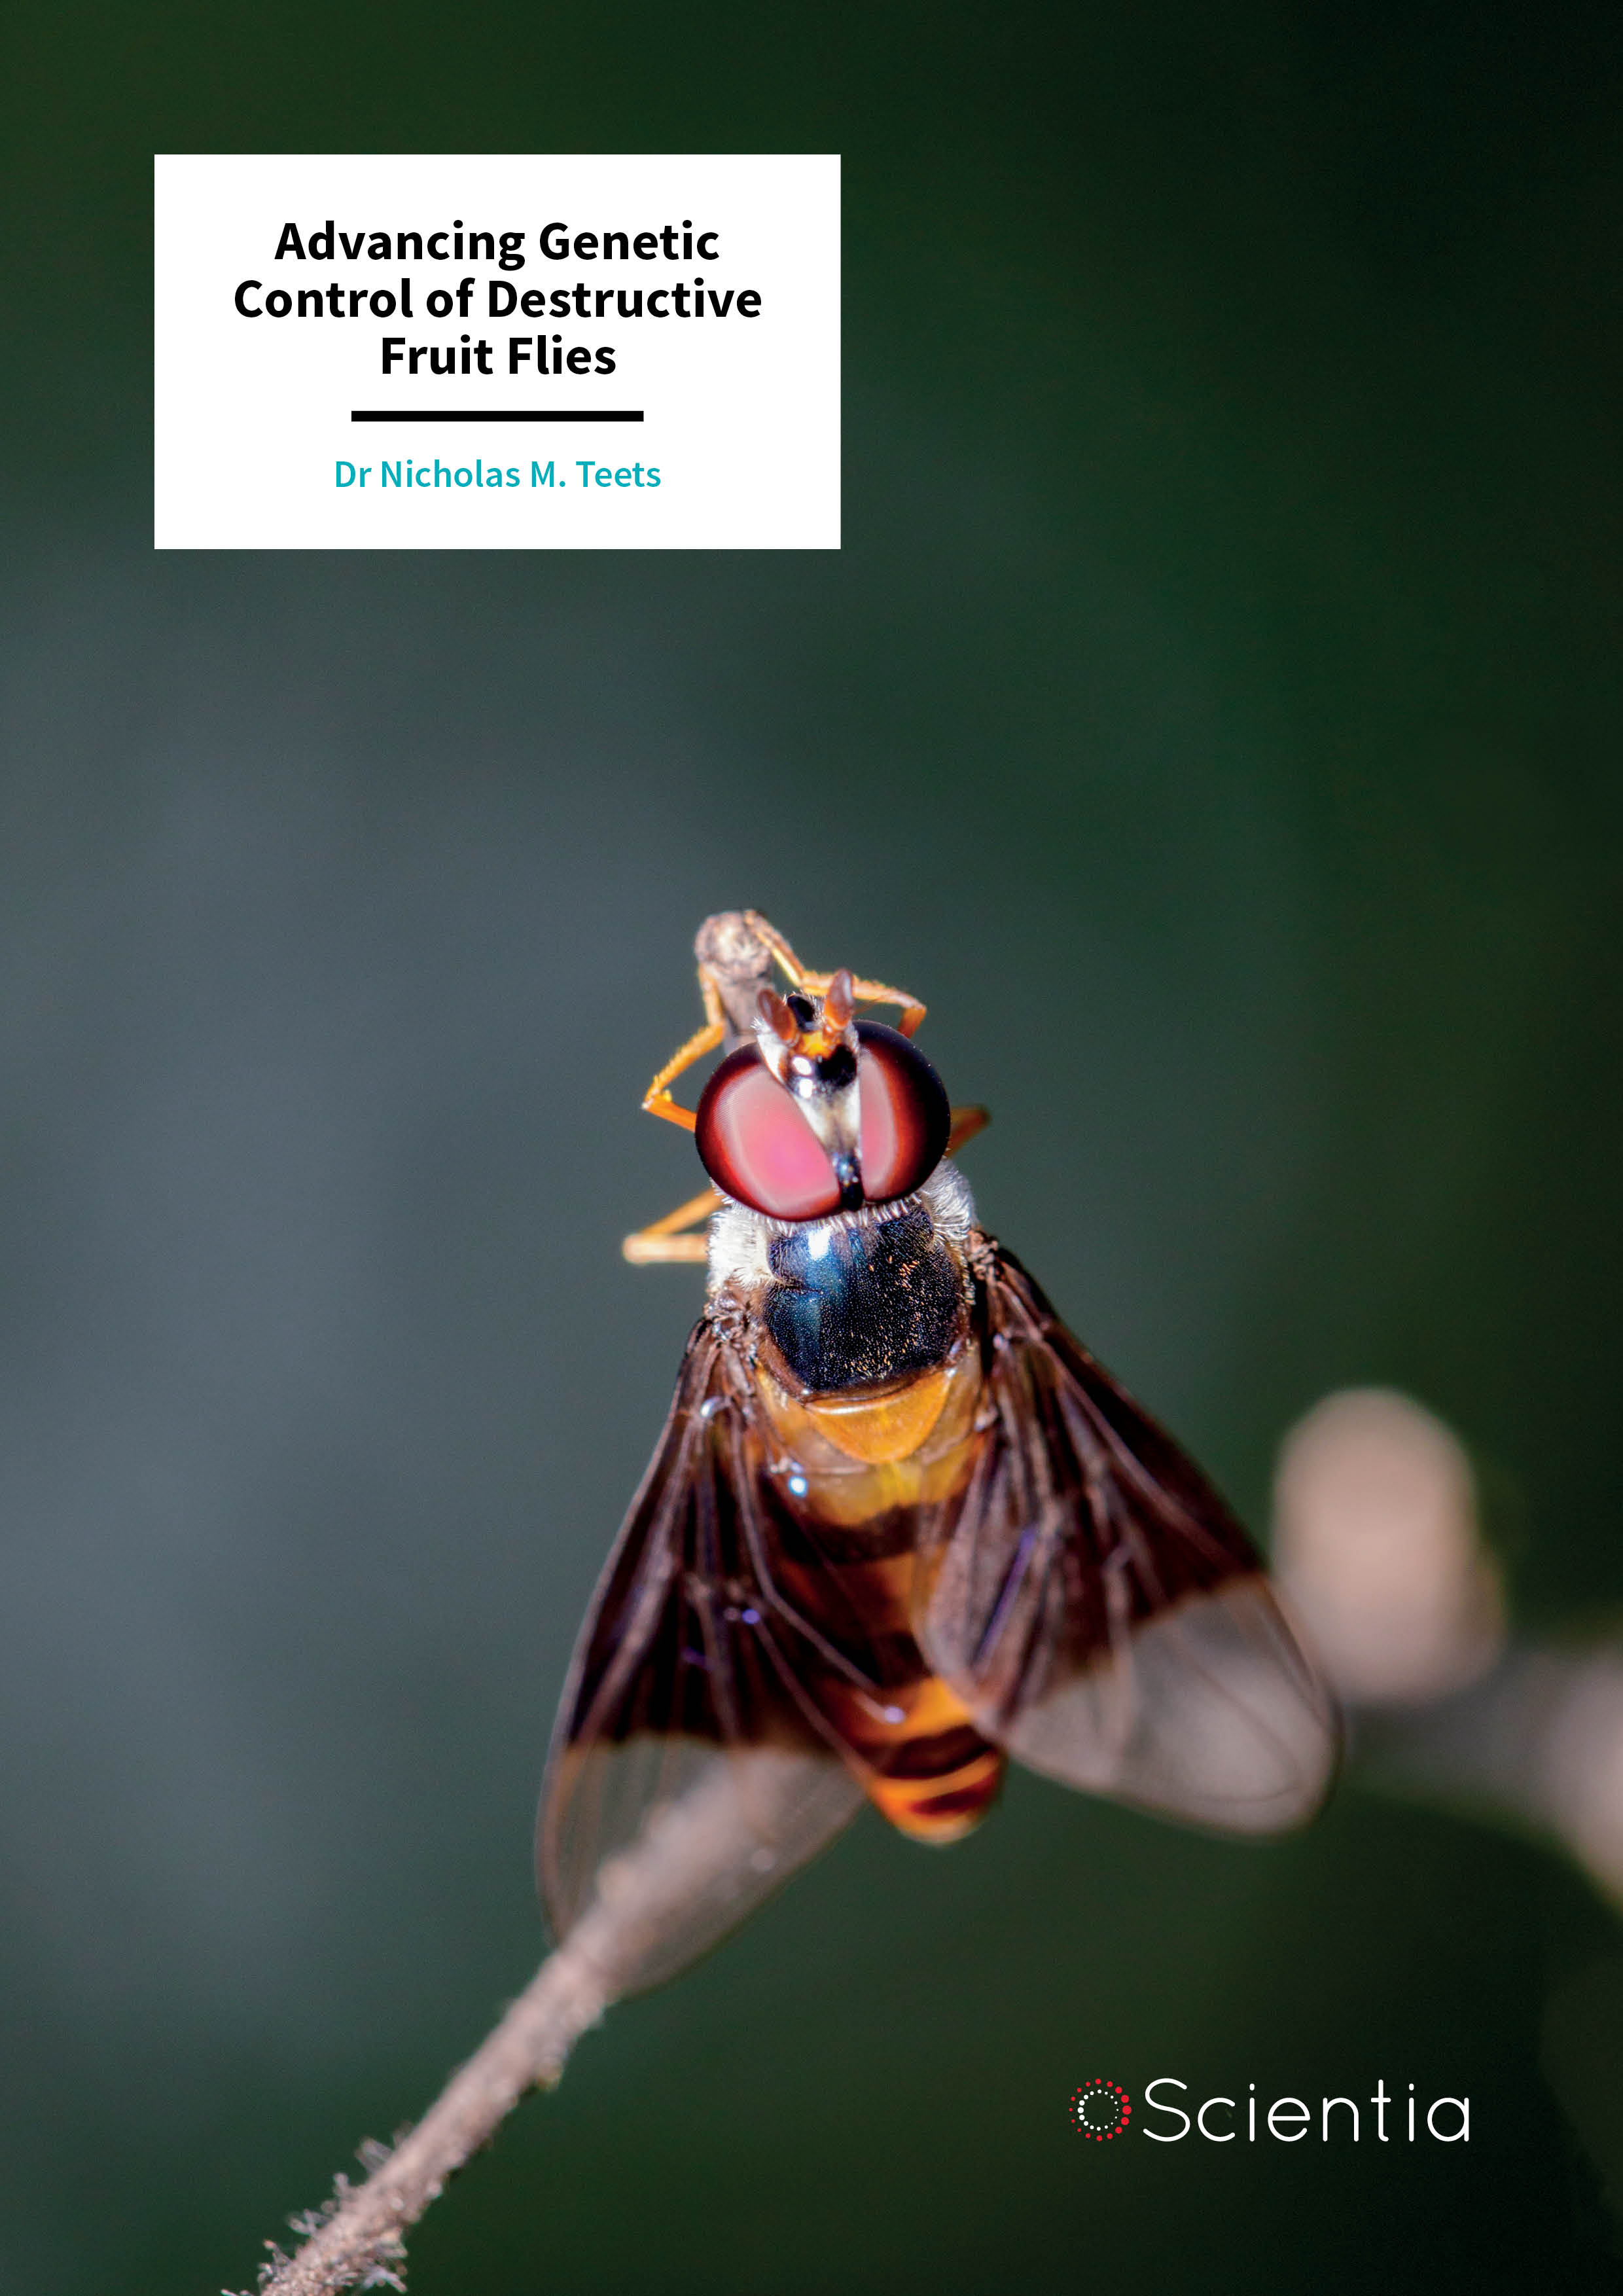 Dr Nicholas M. Teets – Advancing Genetic Control of Destructive Fruit Flies